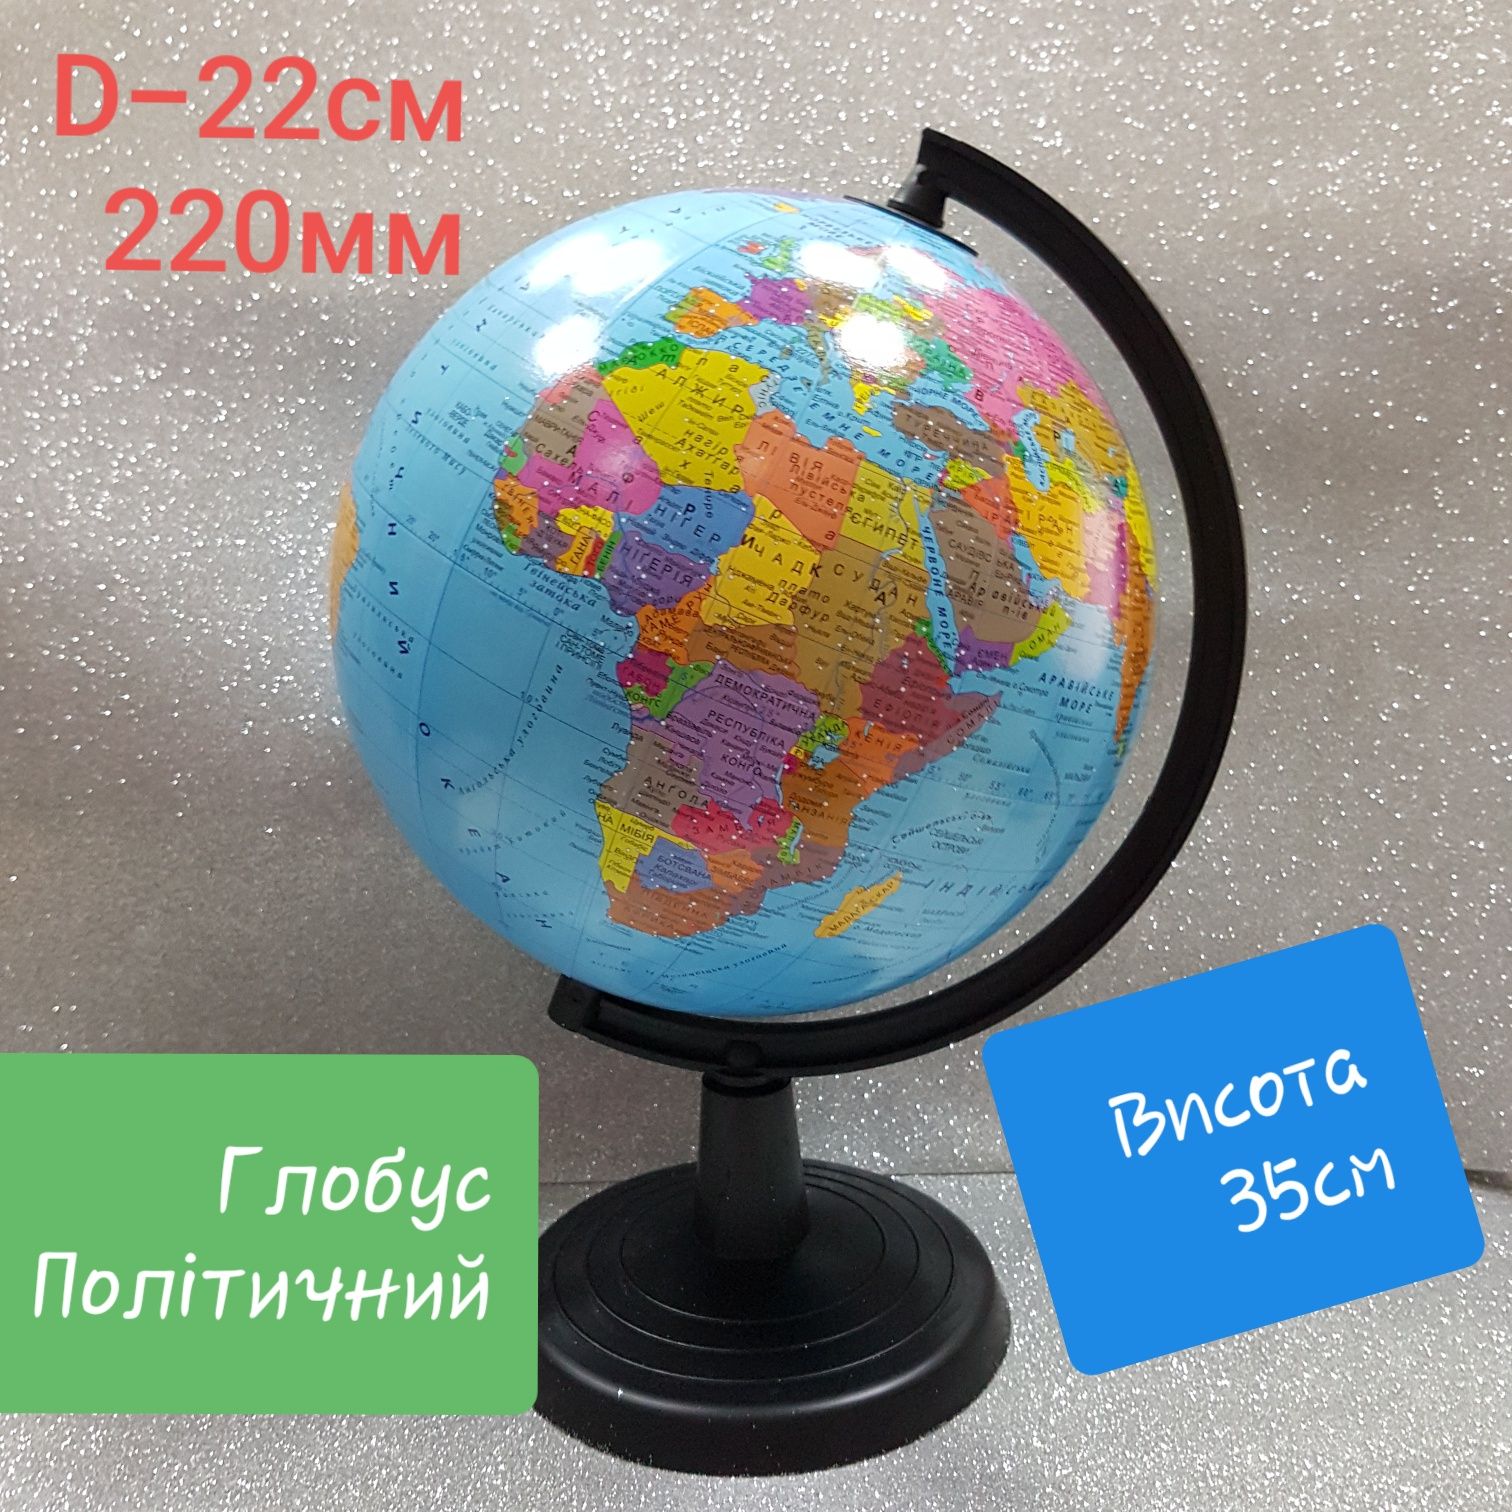 Глобус Політичний Фізичний D-22см  Глобус Политический Географический